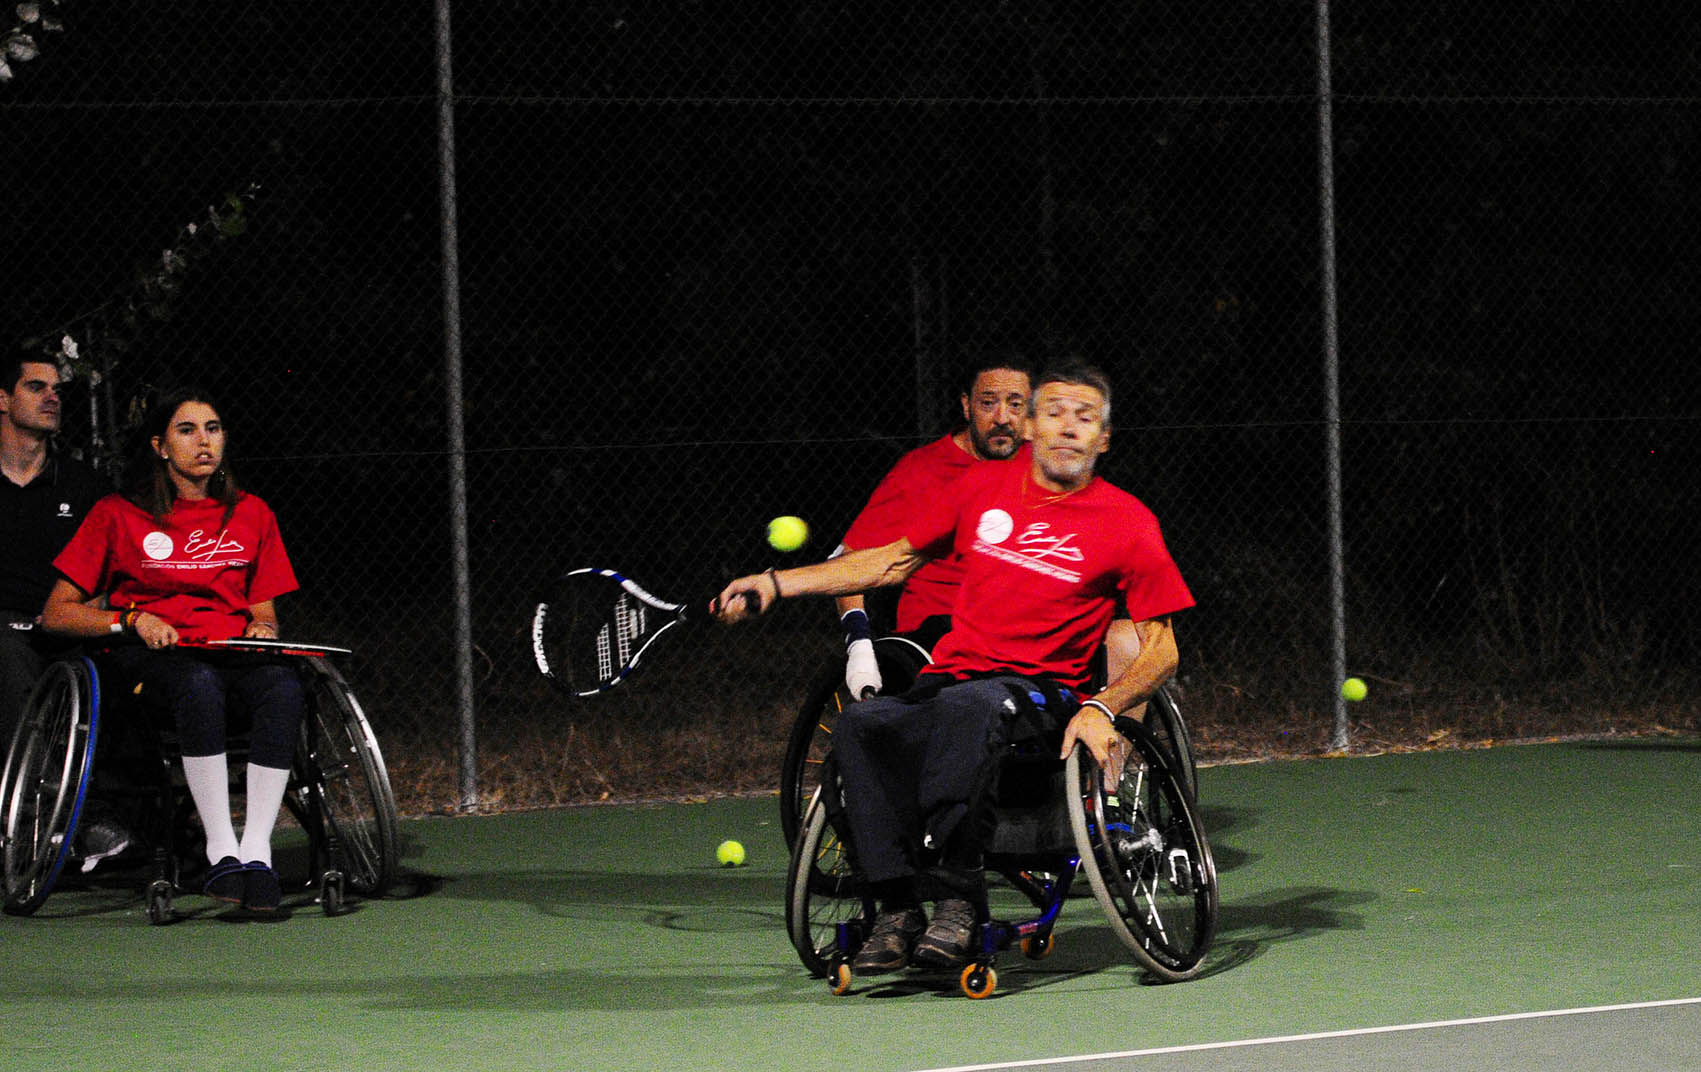 La Escuela de tenis en silla de ruedas de la Fundación Emilio Sánchez Vicario